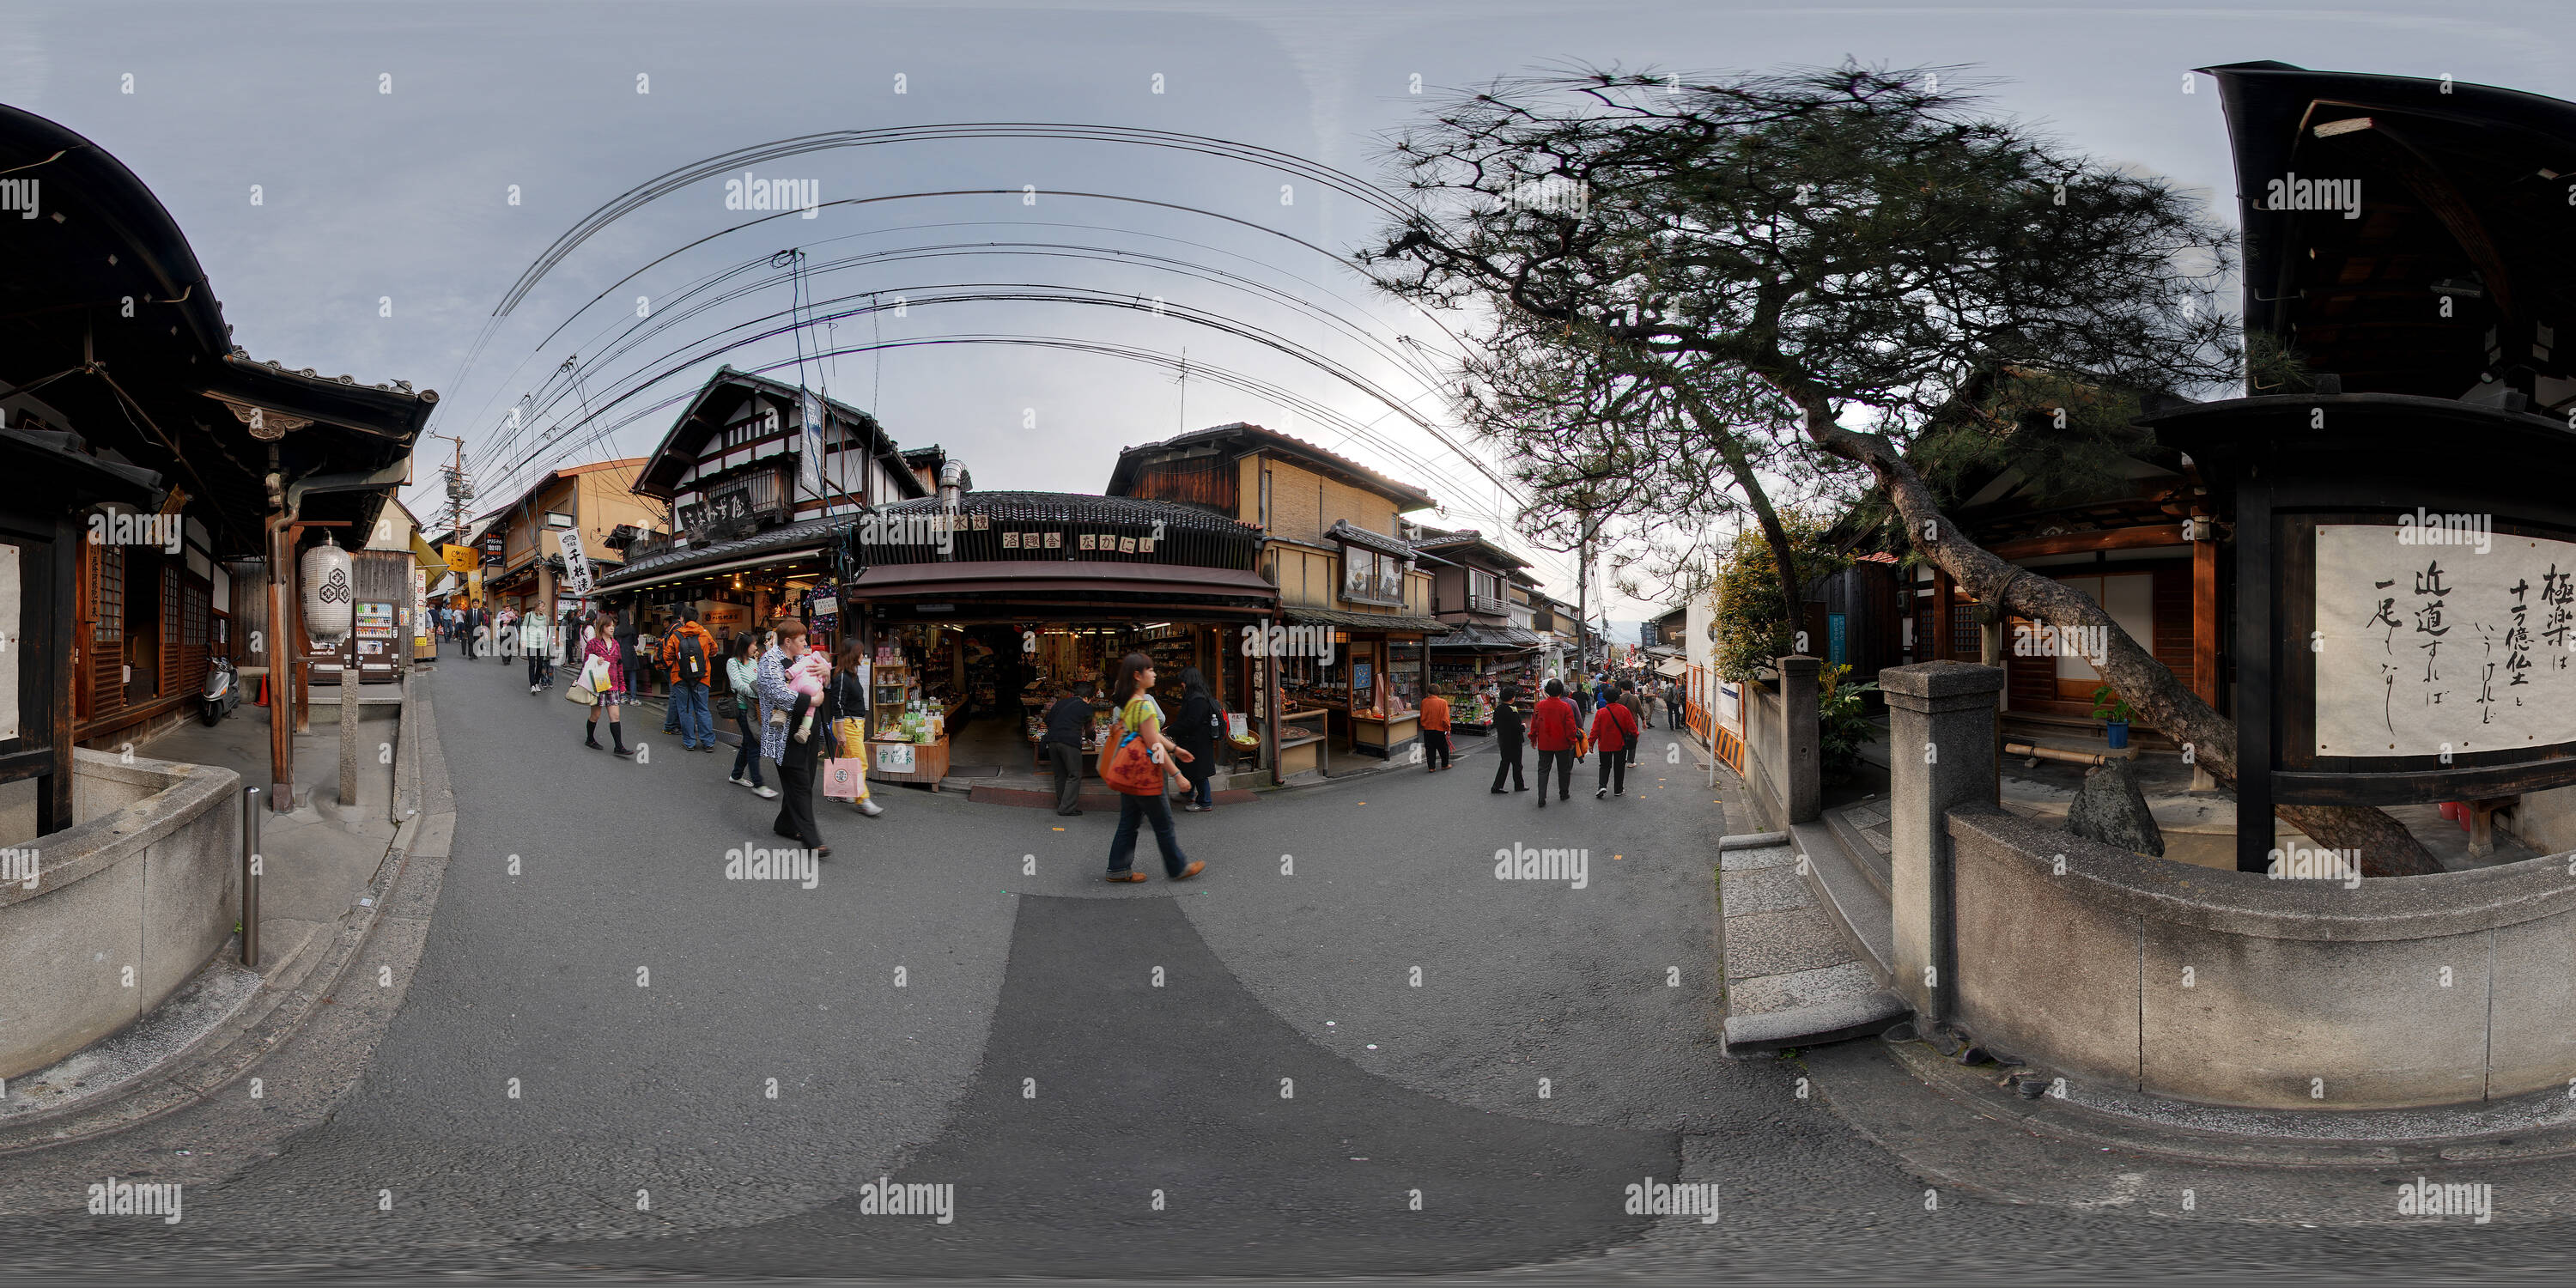 Visualizzazione panoramica a 360 gradi di Negozi giapponesi in Matsubara dori (street), nei pressi di Kiyomizu dera, Kyoto